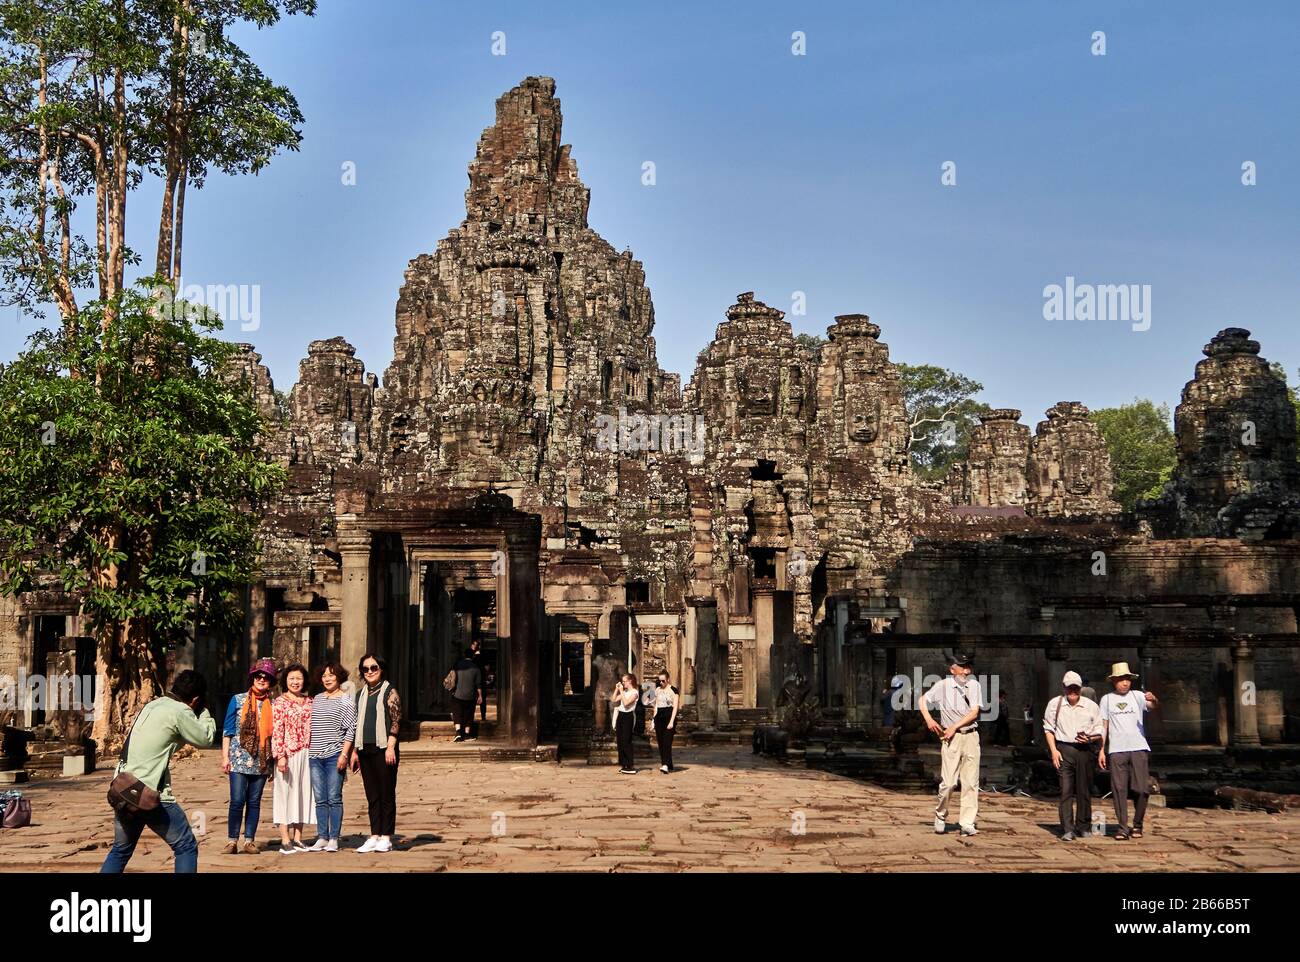 Der prächtige Bayon-Tempel befindet sich in der letzten Hauptstadt des Khmer-Imperiums - Angkor Thom. Seine 54 gotischen Türme sind mit 216 riesigen lächelnden Gesichtern dekoriert. Erbaut im späten 12. Oder frühen 13. Jahrhundert als offizieller Staatstempel des Königs Jayavarman VII Stockfoto